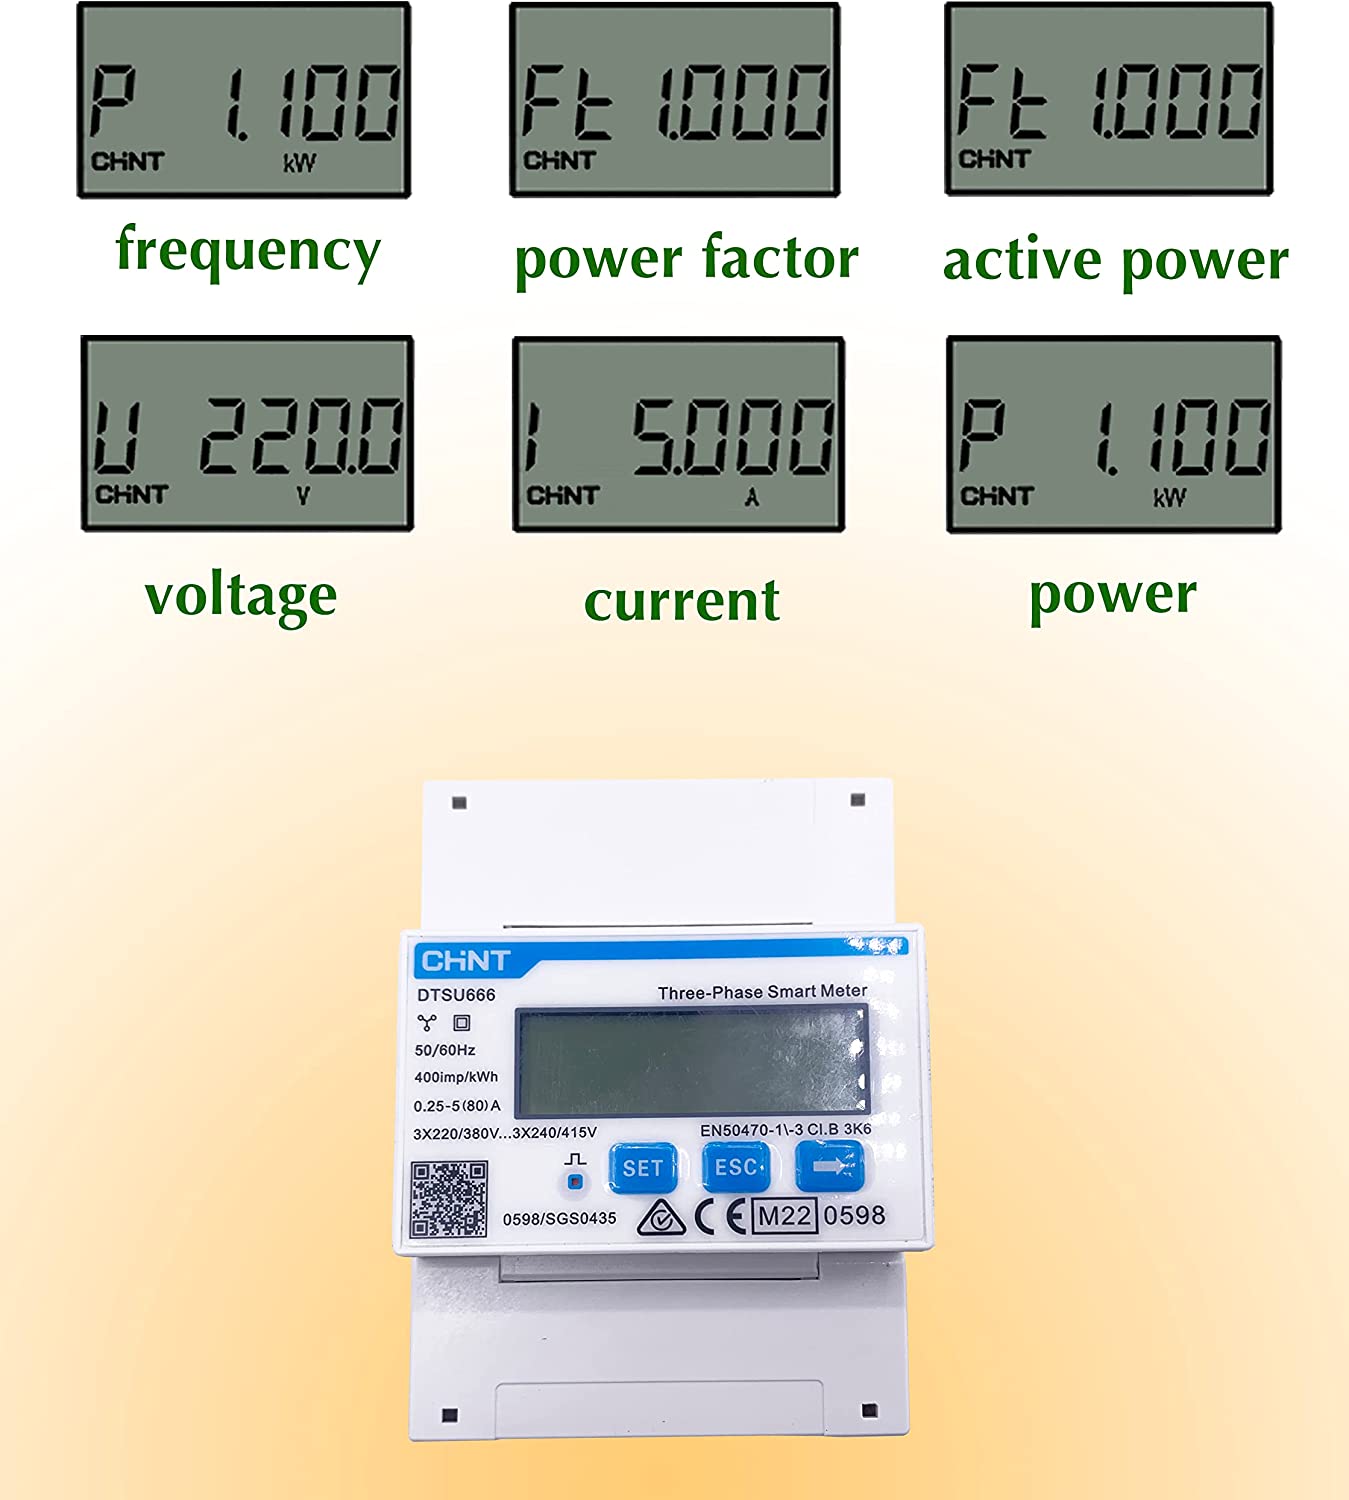 DTSU666 Trifase Contatore Energia Elettrica per Sistemi Solari PV, 3x220-380V 3x240-415V 0.25-5(80) A 50/60hz